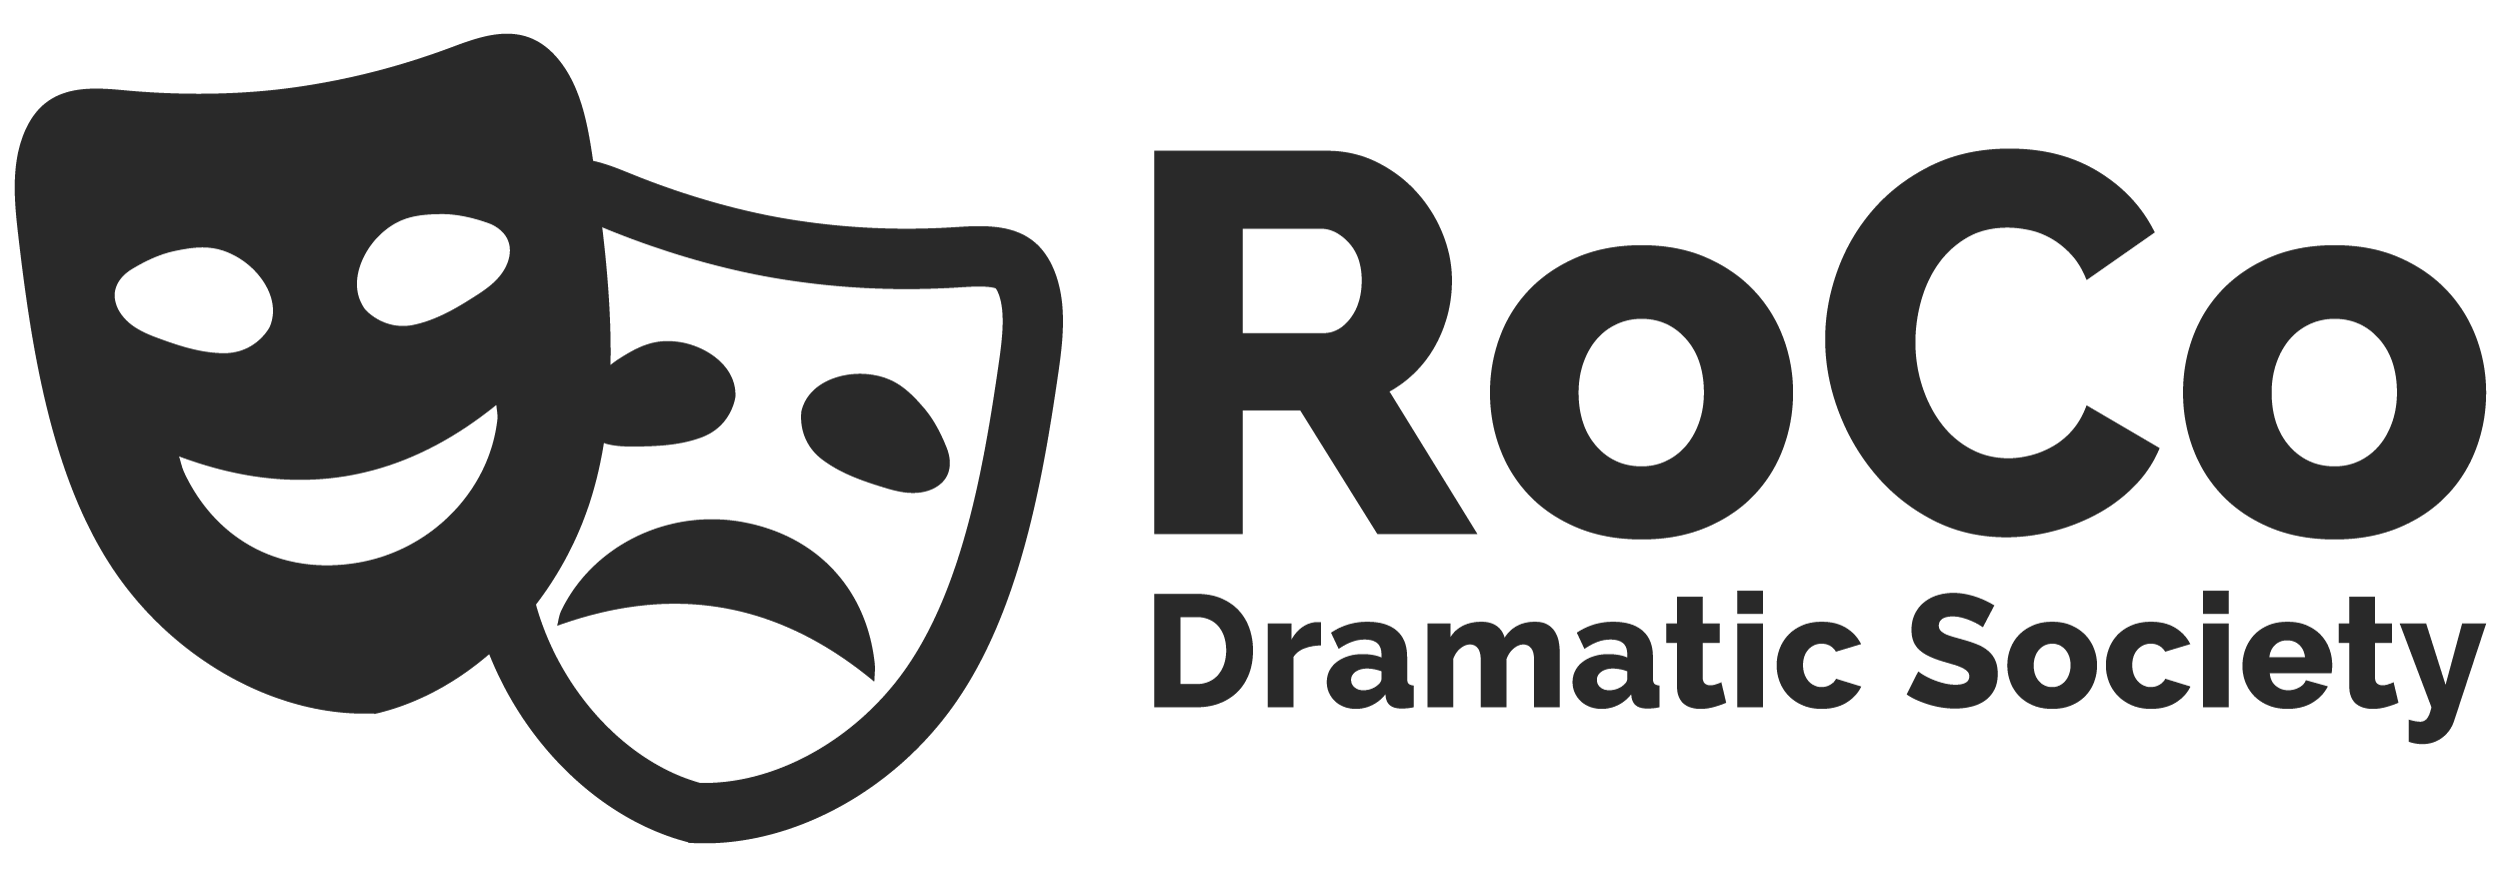 RoCo Dramatic Society